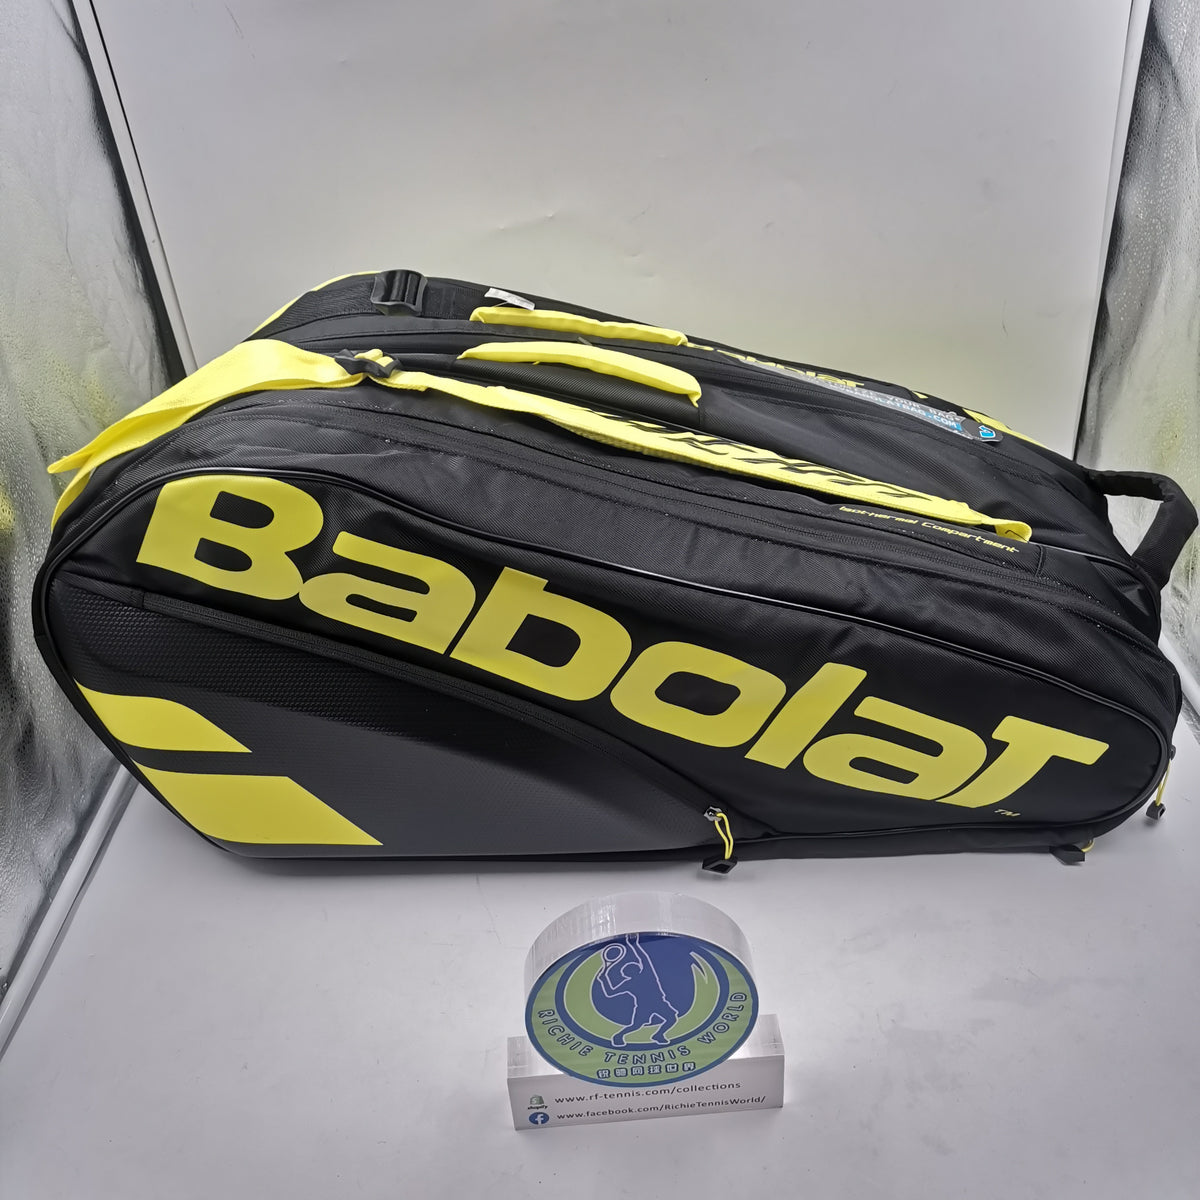 babolat tennis bag